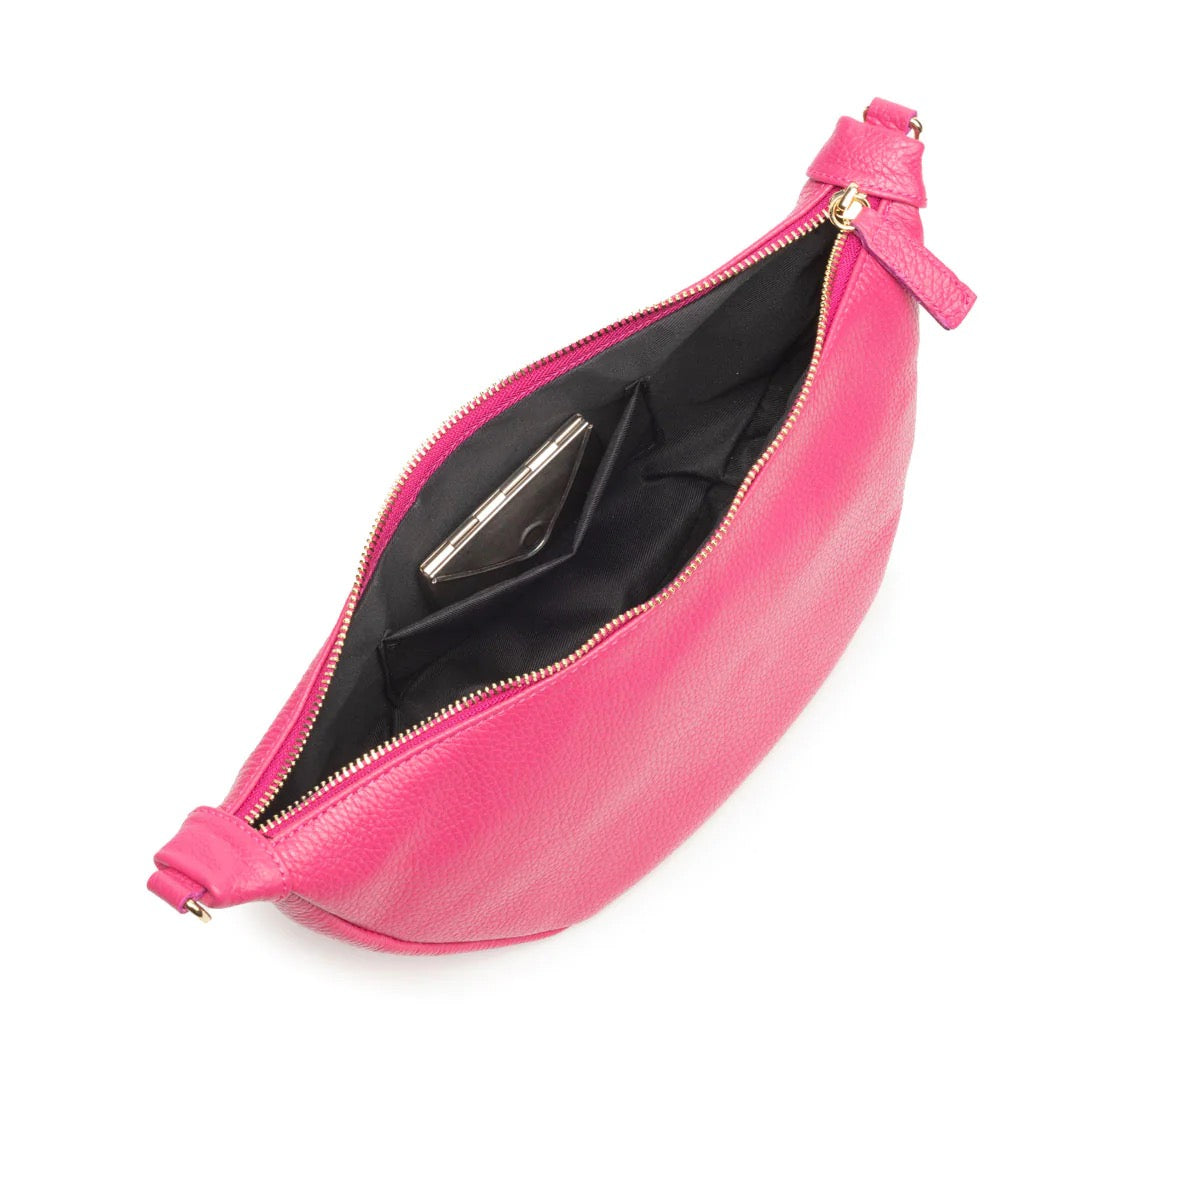 Elie Beaumont Hobo Bag Handbag - Cerise Pink